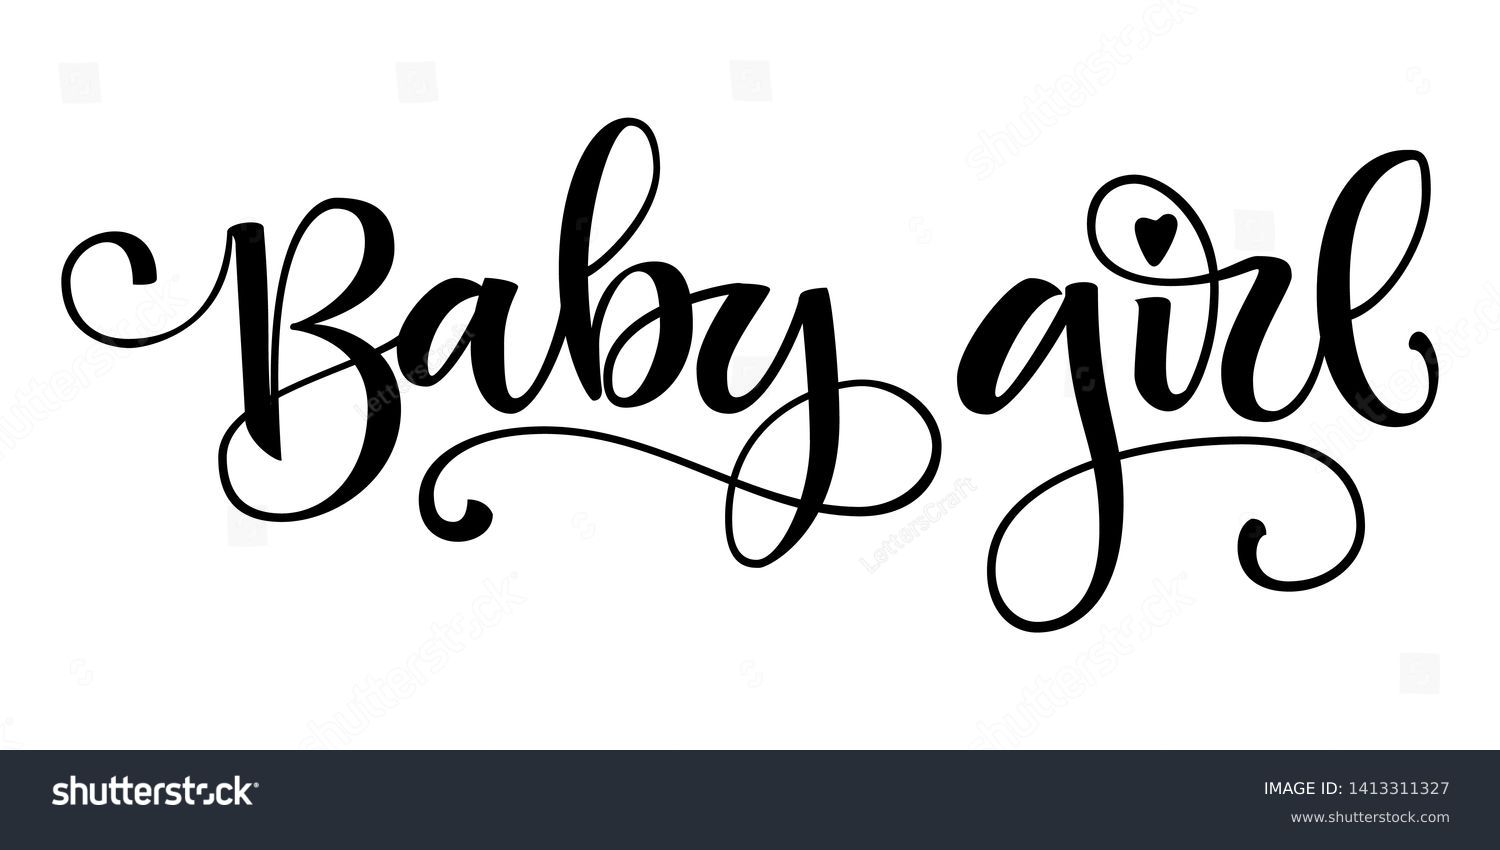 imágenes de Baby girl text font Imágenes fotos y vectores de stock Shutterstock